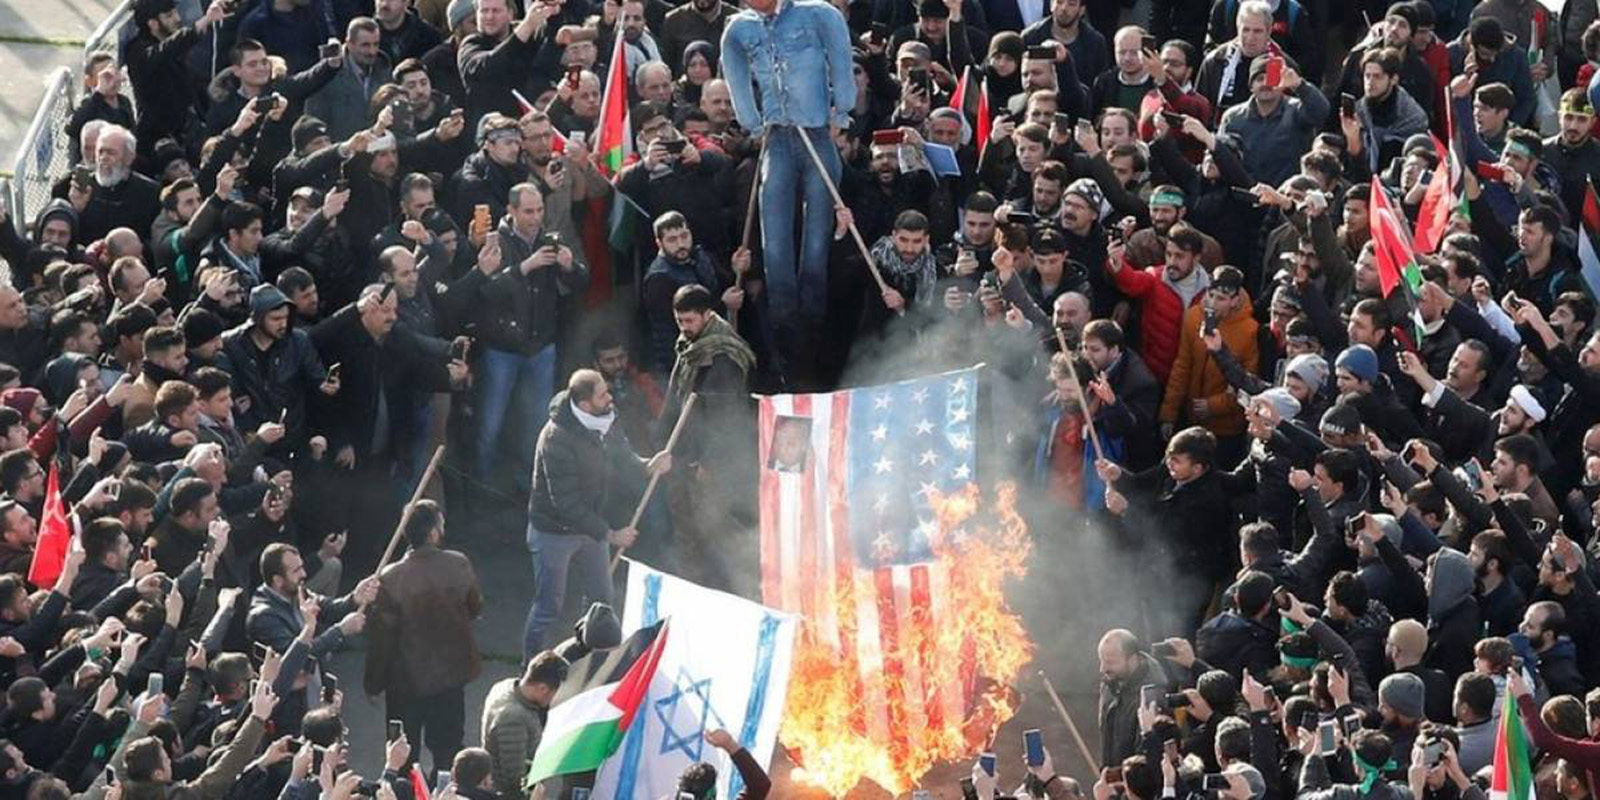 Jerusalén sigue generando manifestaciones y tensión diplomática